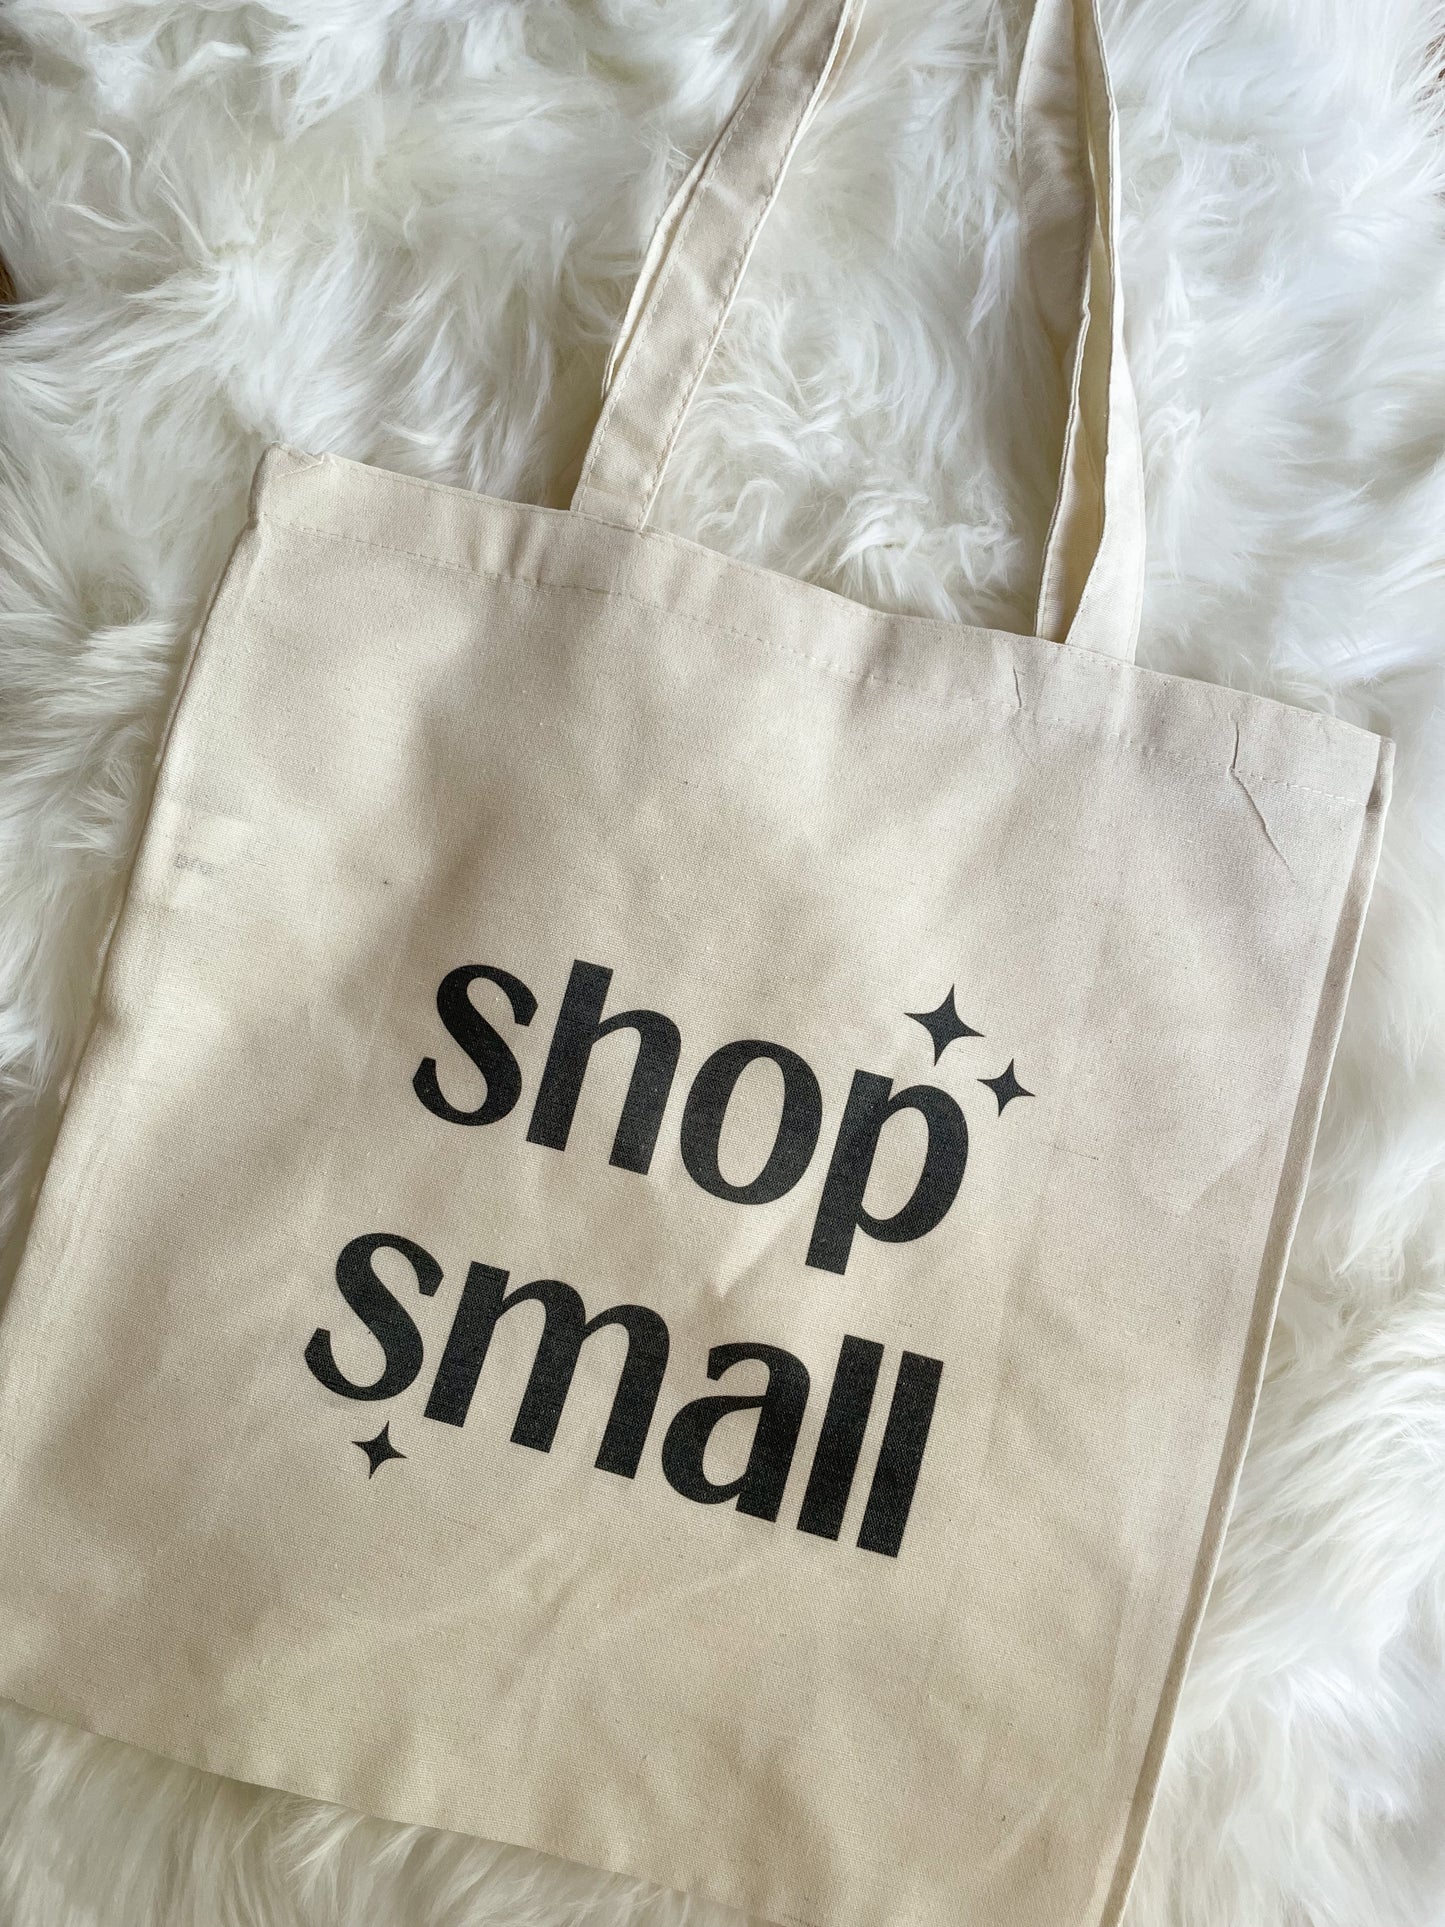 Shop Small Tote